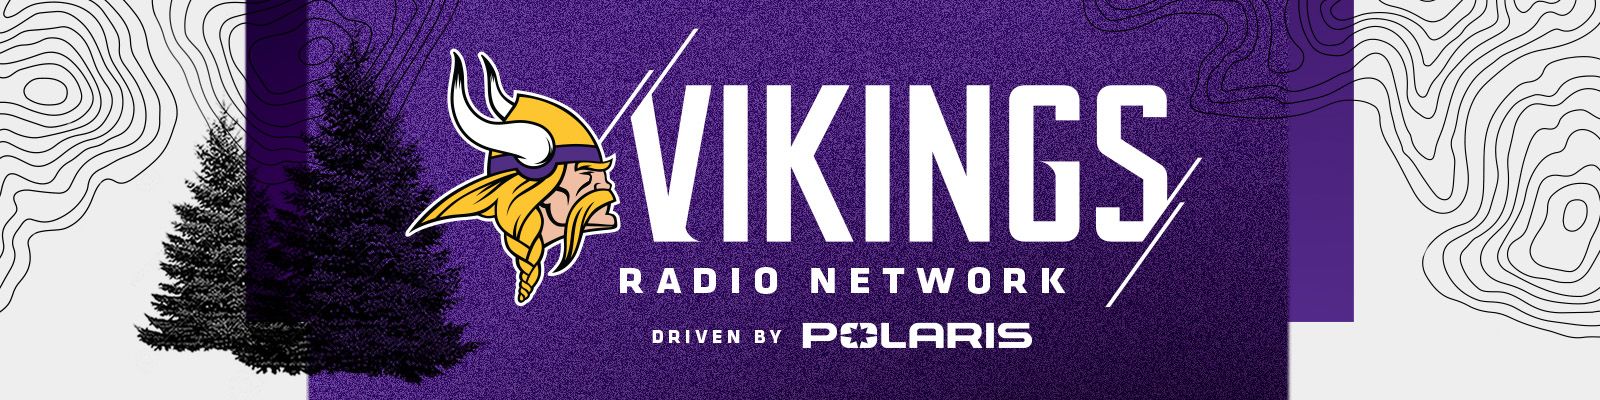 Vikings Radio Network Minnesota Vikings